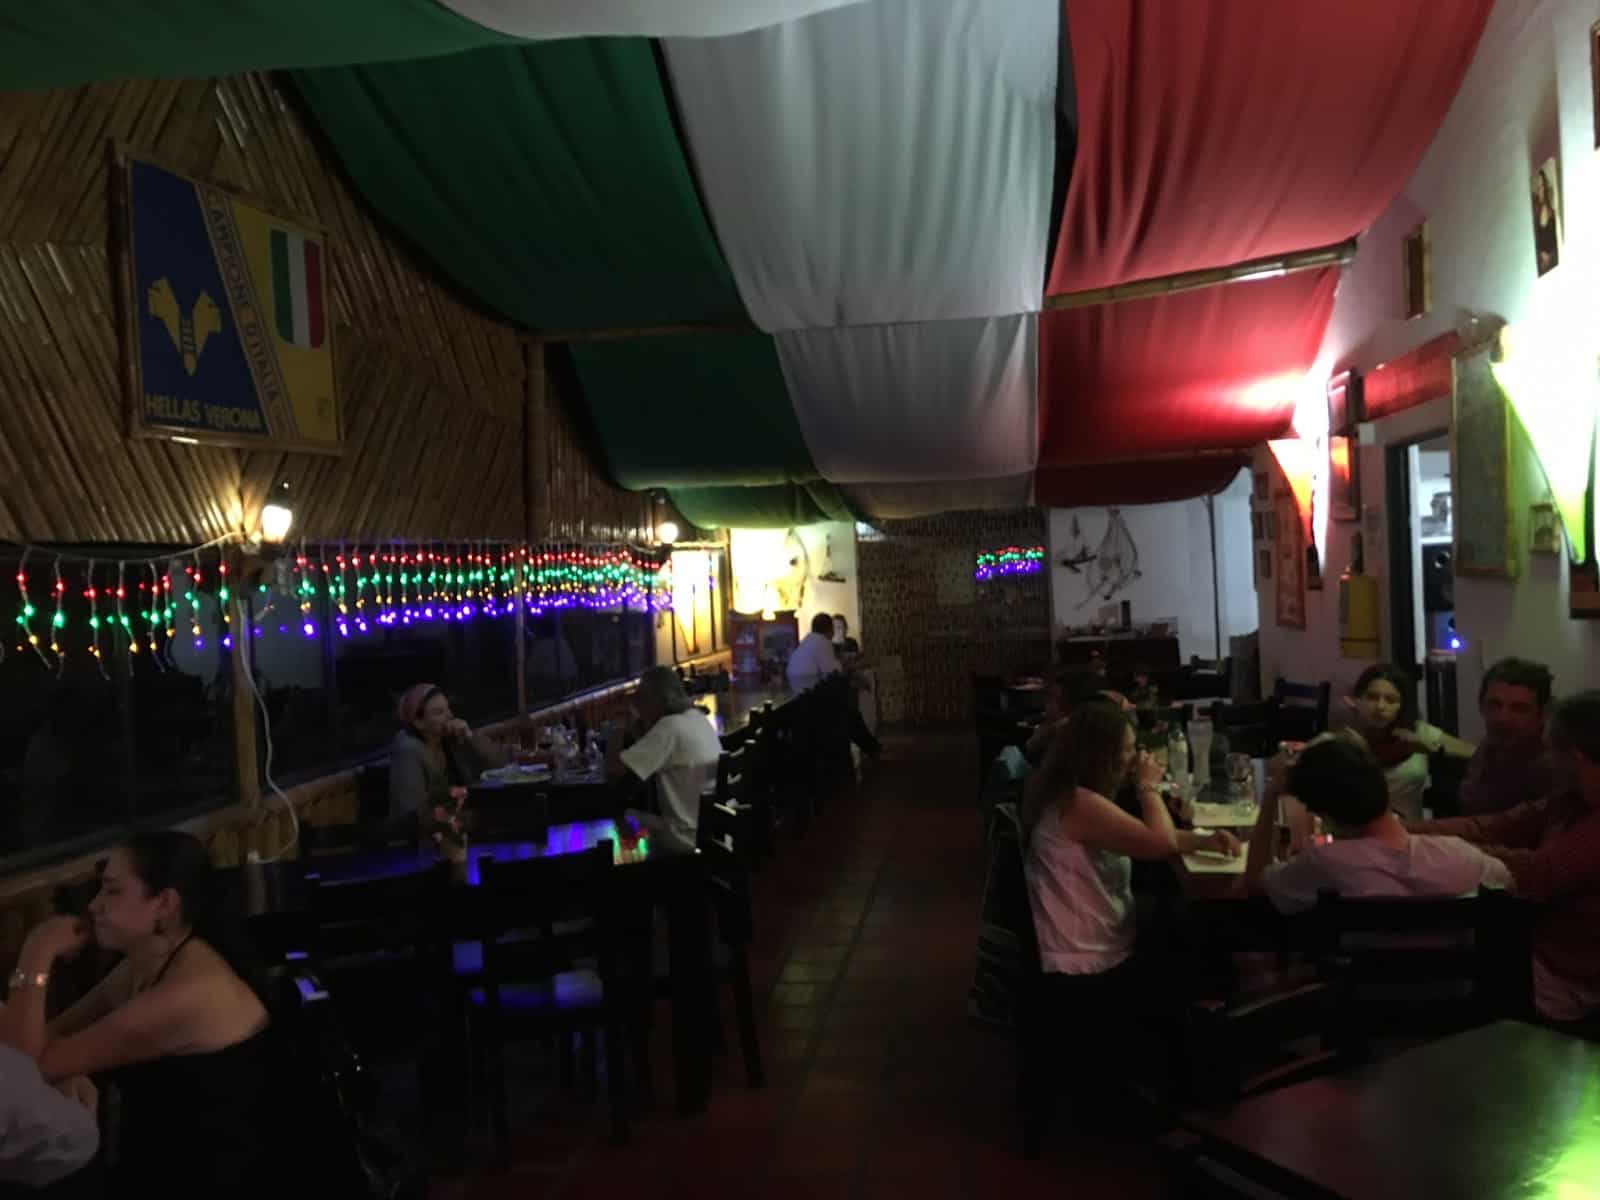 Restaurante Italiano da Ugo in San Agustín Huila Colombia restaurant